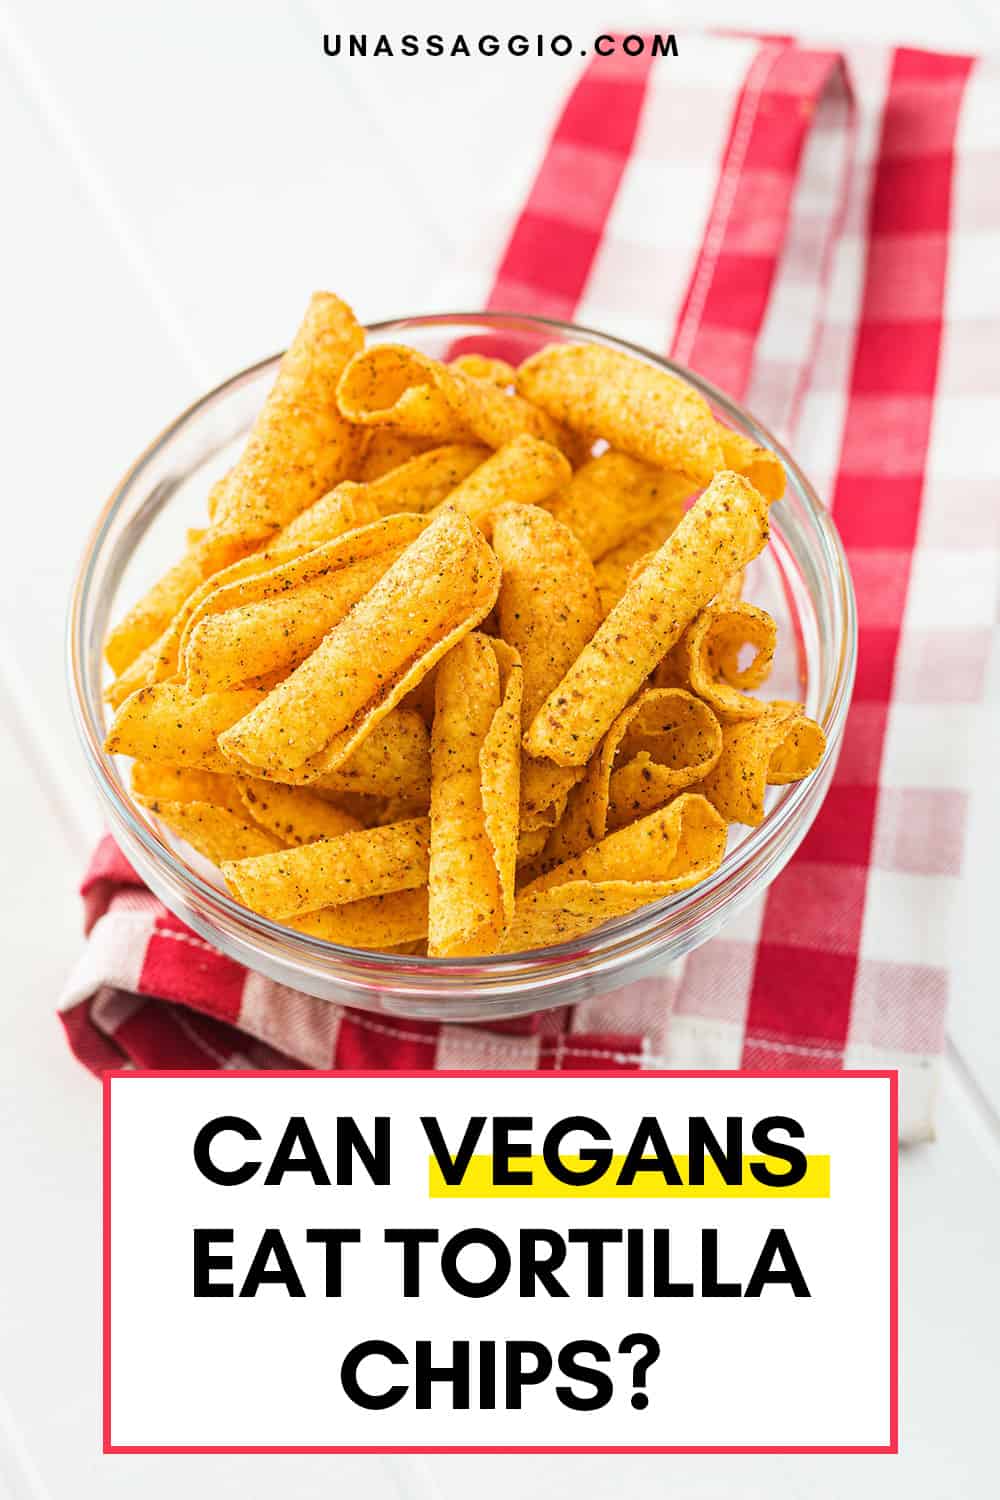 Can Vegans Eat Tortilla Chips?